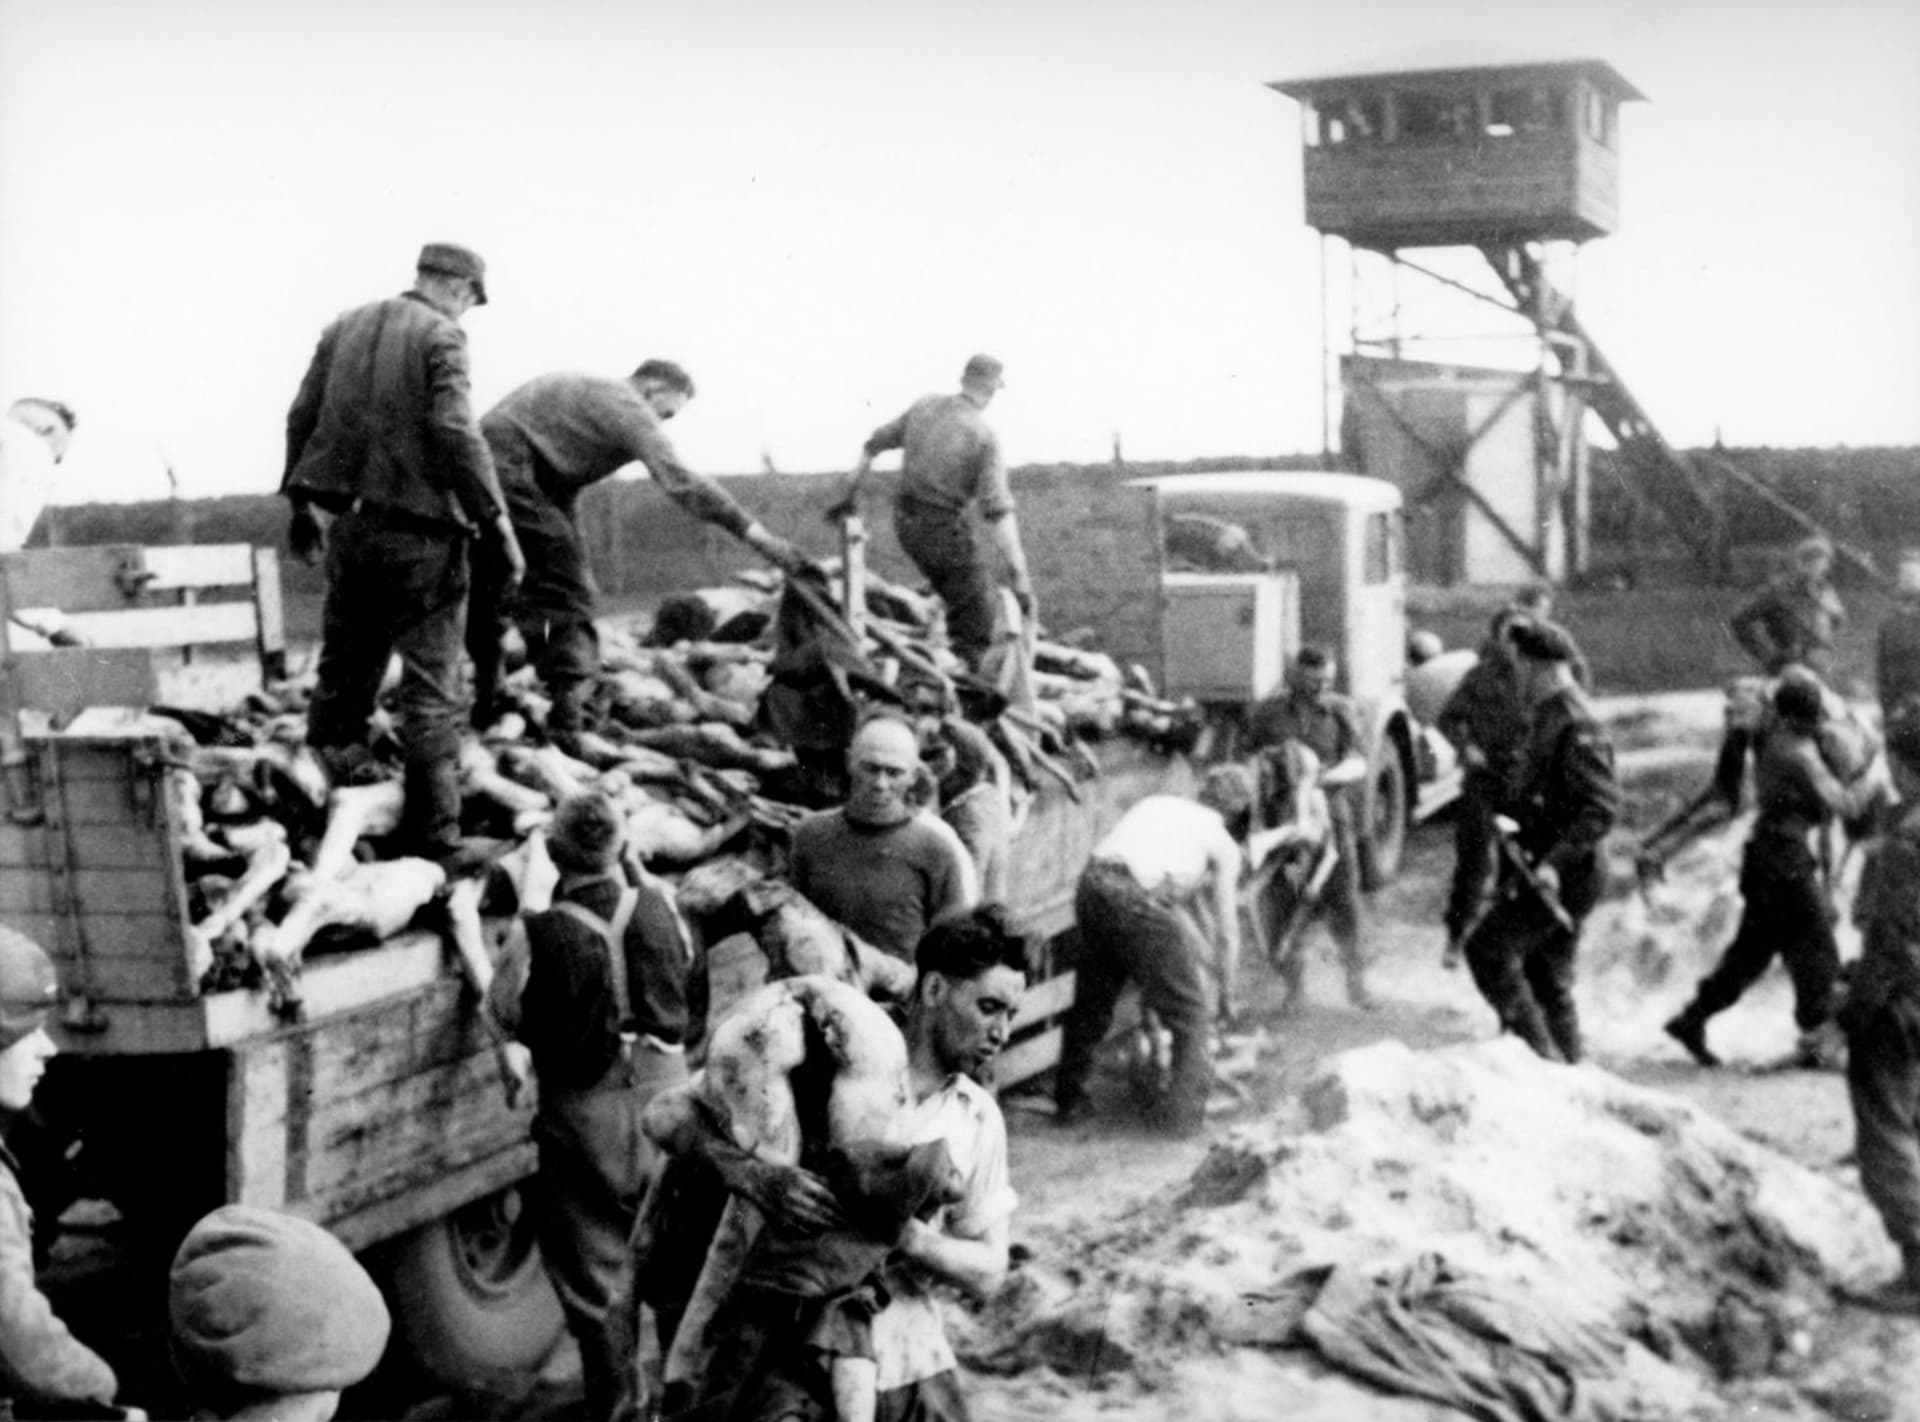 Těla v koncentračním táboře Belsen